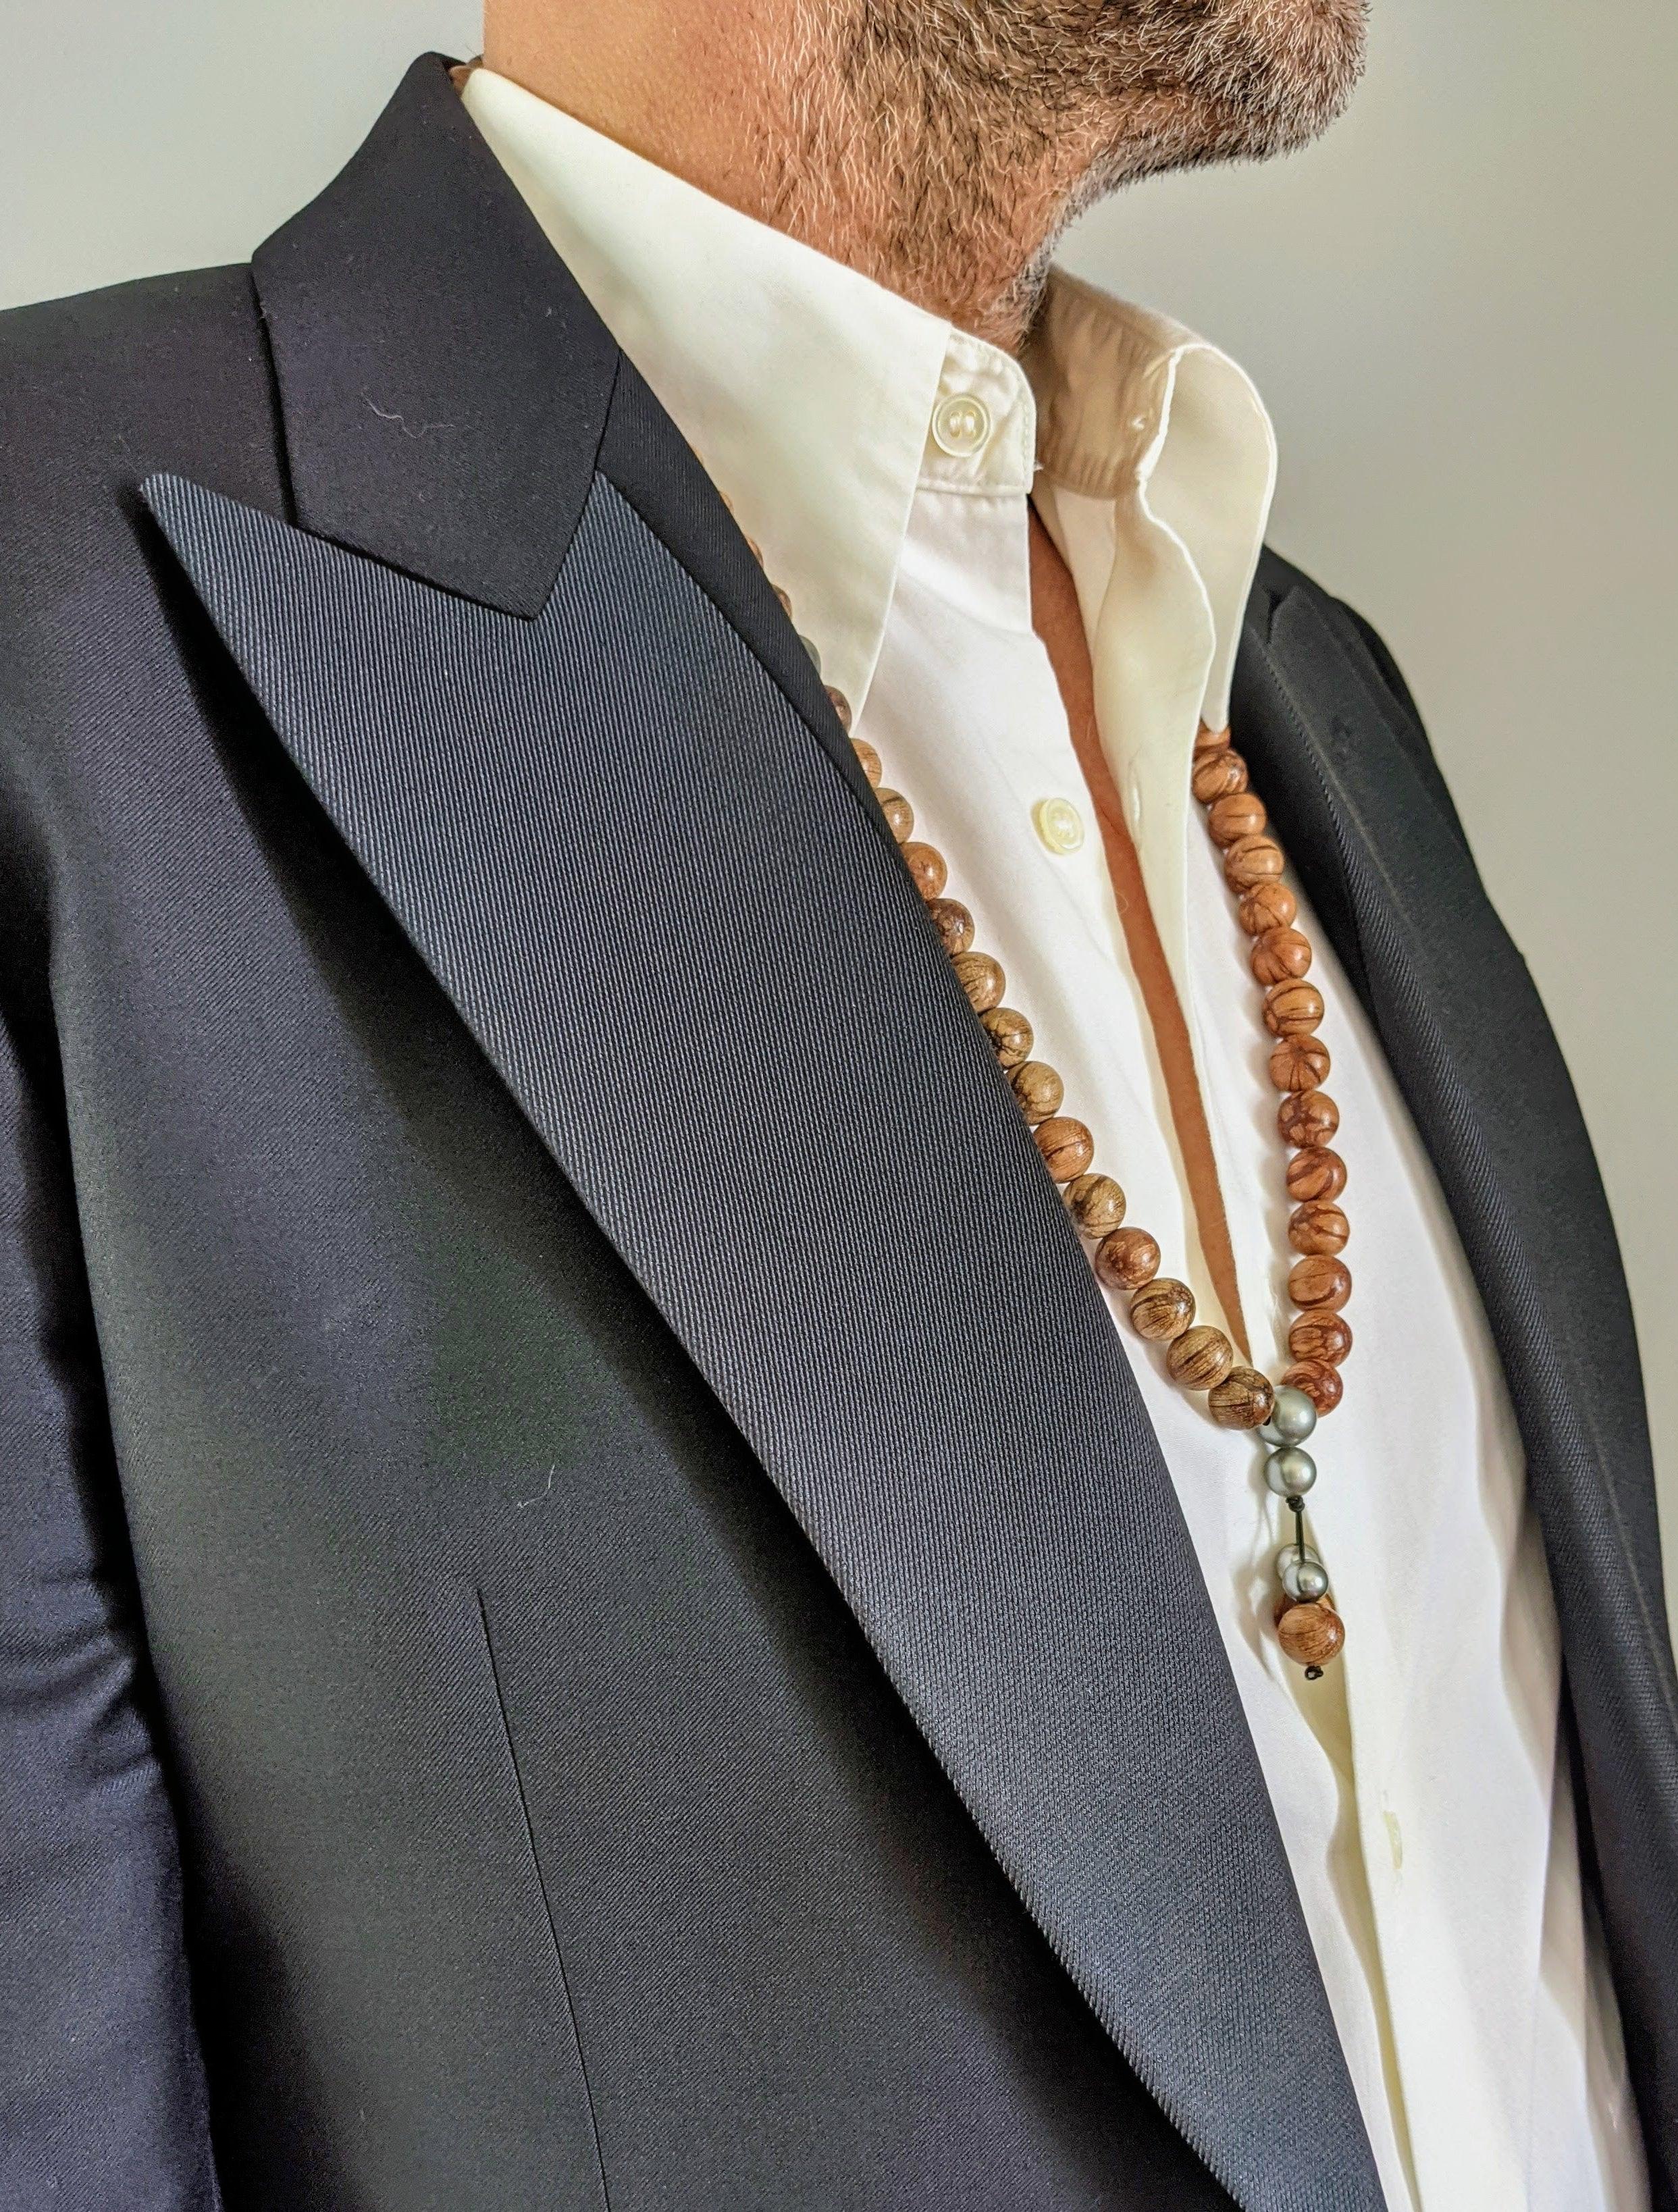 Diese Kette ist aus sehr leichten Abelia-Holzperlen mit einem Durchmesser von 12 mm und 6 wunderschönen Tahiti-Perlen gefertigt.

Die Halskette bietet ein kühnes und atemberaubendes Design, das von buddhistischen Gebetsketten inspiriert ist. Die